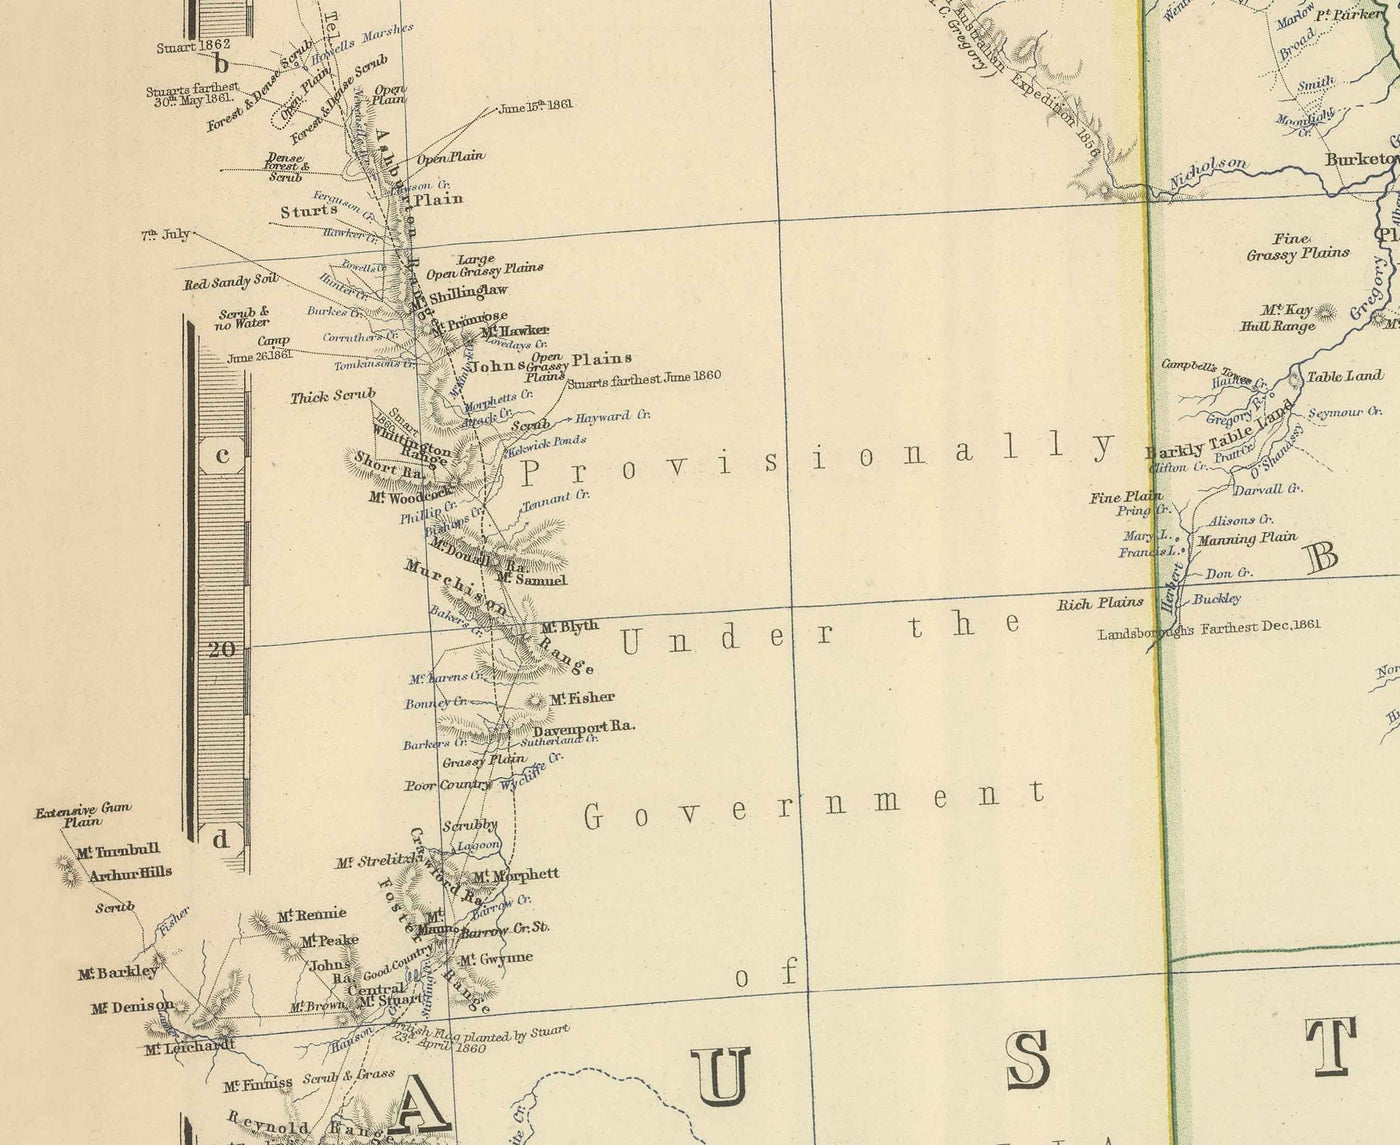 Ancienne carte de l'Australie orientale, 1879 - Premières colonies britanniques de Nouvelle-Galles du Sud, Victoria, Queensland et Australie du Sud